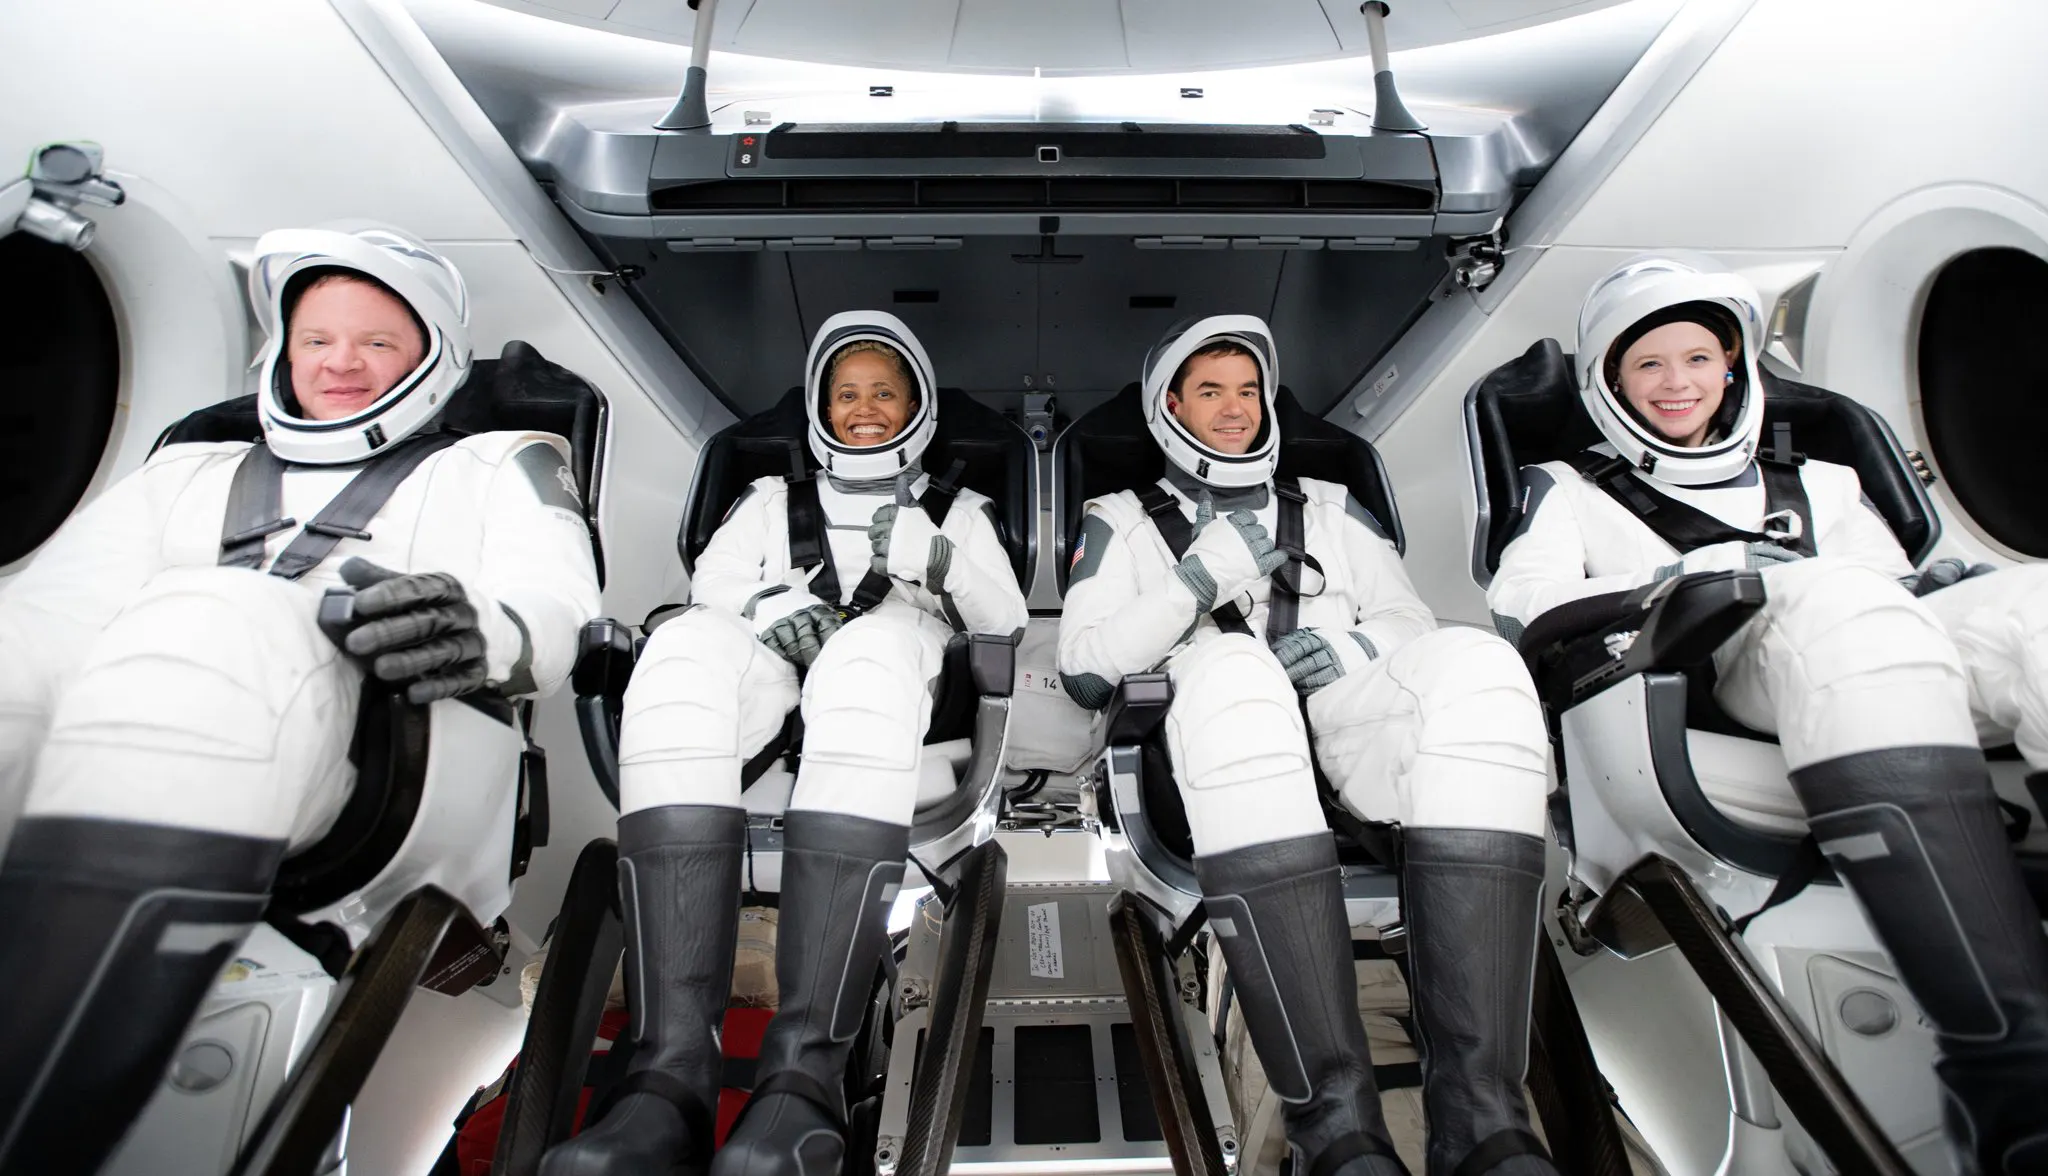 4 hành khách của Inspiration4 trong bộ đồ du hành không gian siêu ngầu của SpaceX. Từ trái sang: ông Chris Sembroski, bà Sian Proctor, anh Jared Issacman và cô Haley Arceneaux. Credit: Inspiration4.